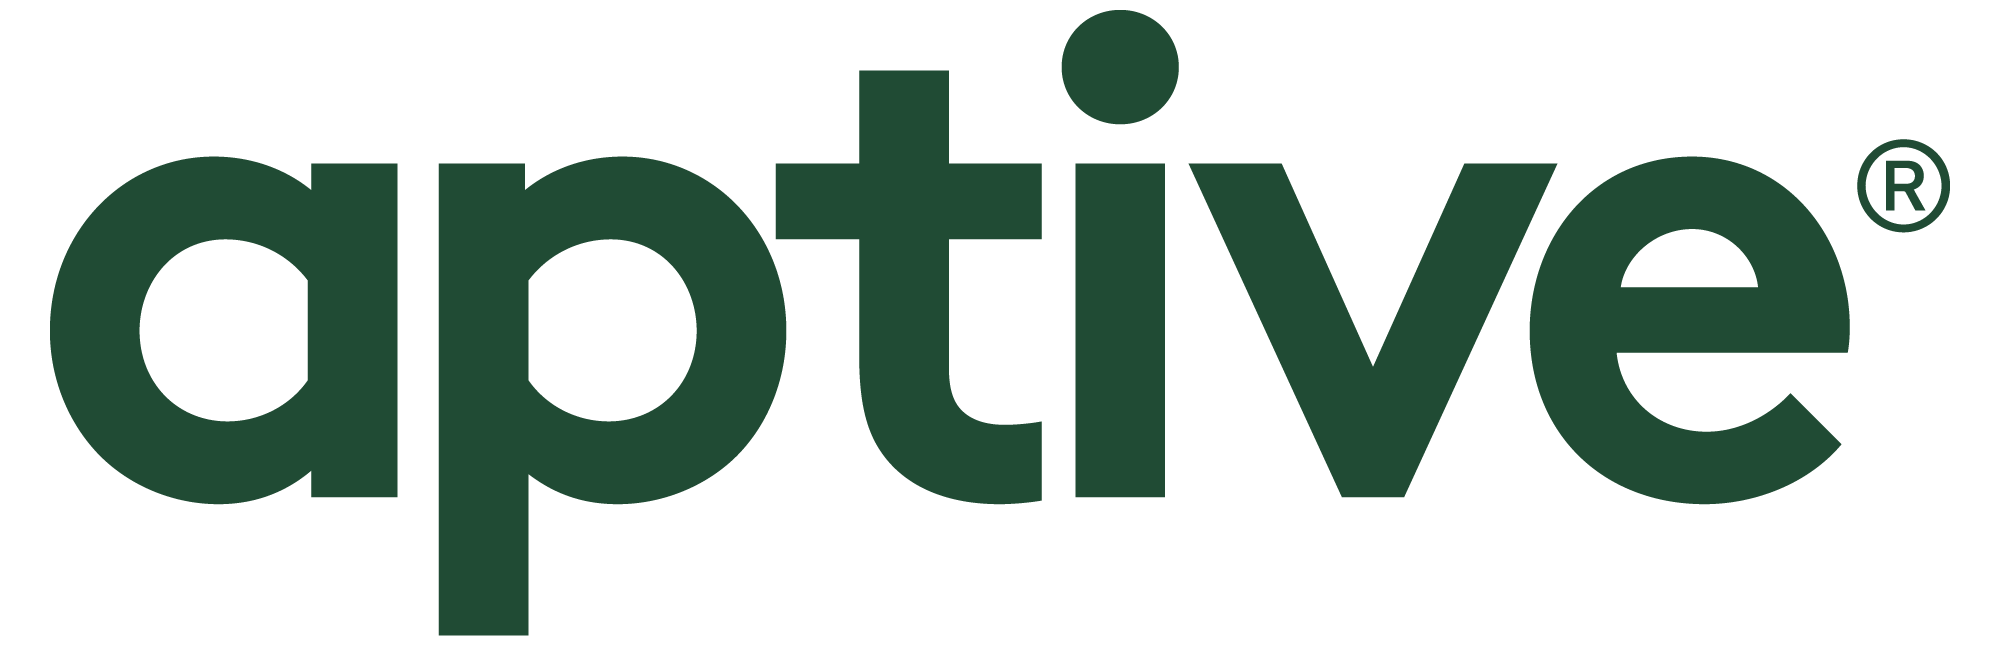 Aptive Environmental LLC logo